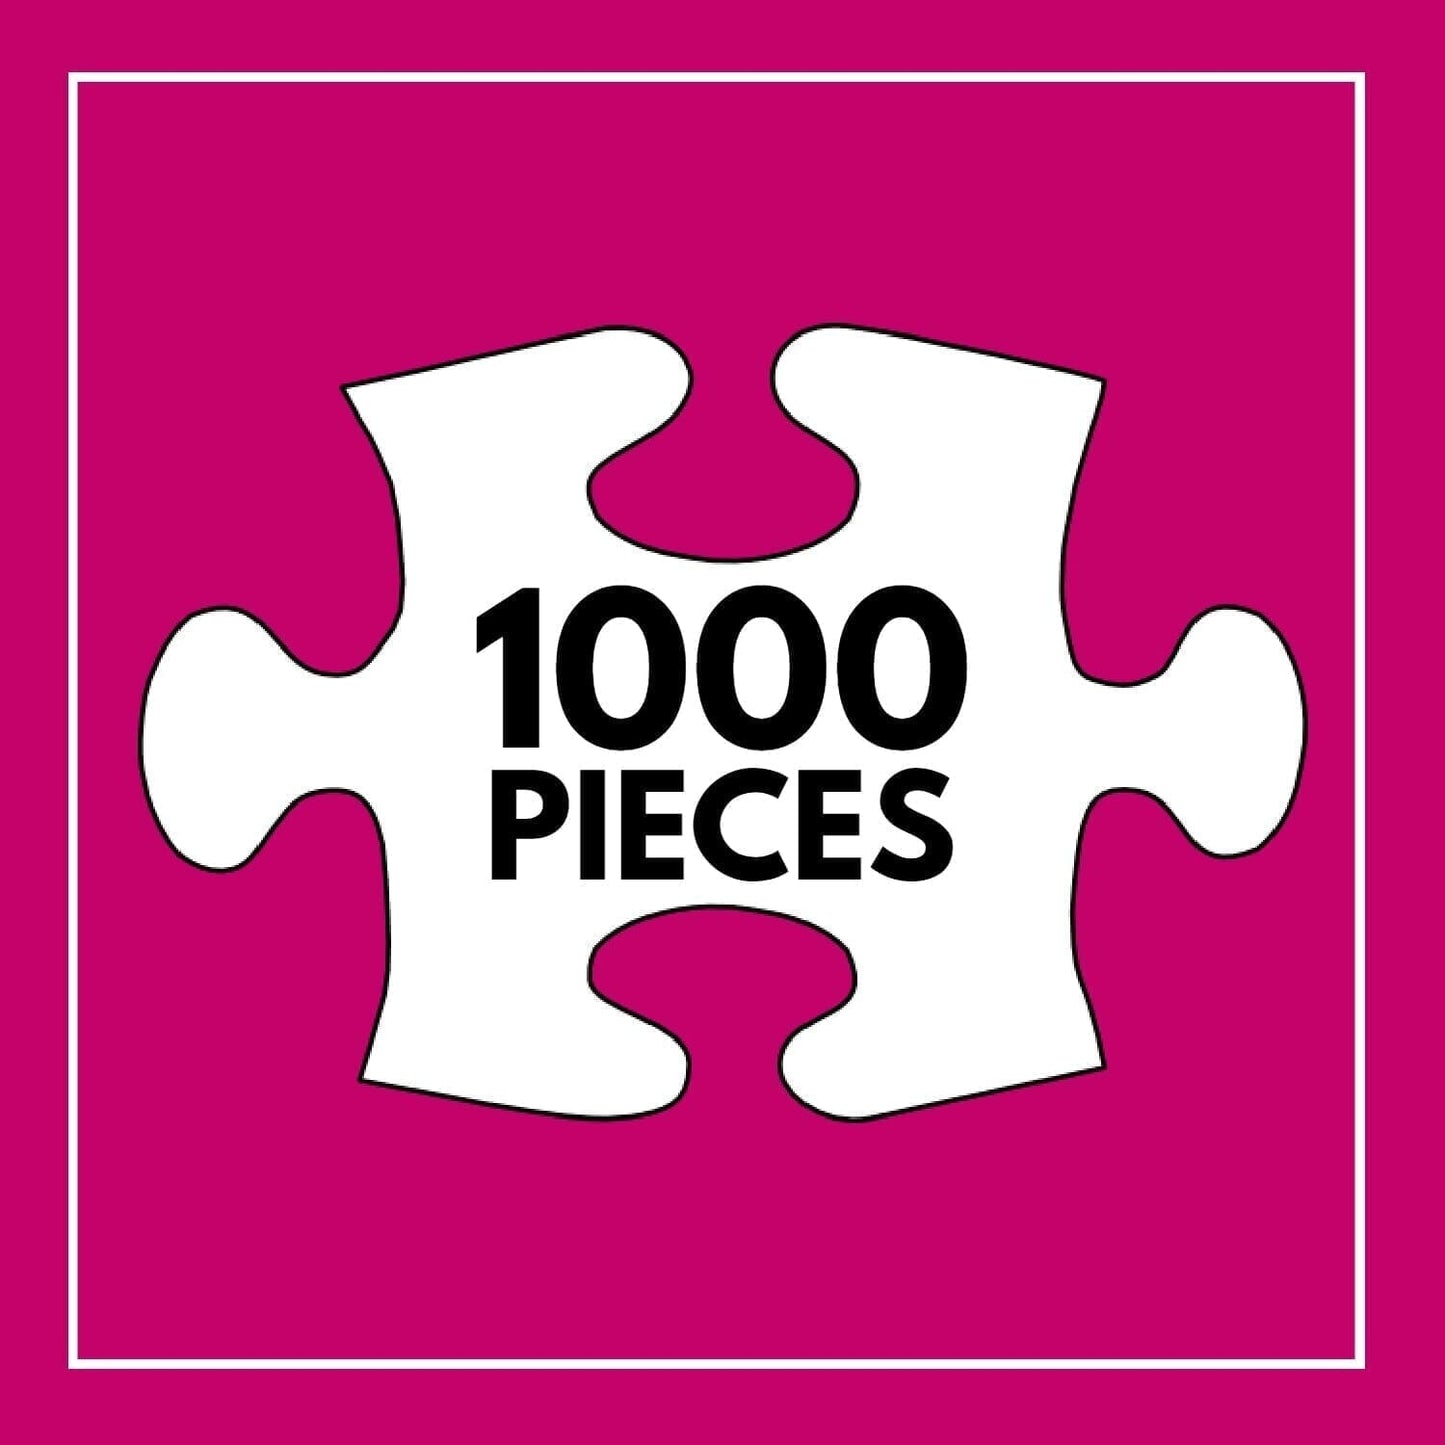 City Garden Rainbow Retreat - 1000 Piece Jigsaw Puzzle Jigsaw Puzzles Cross & Glory